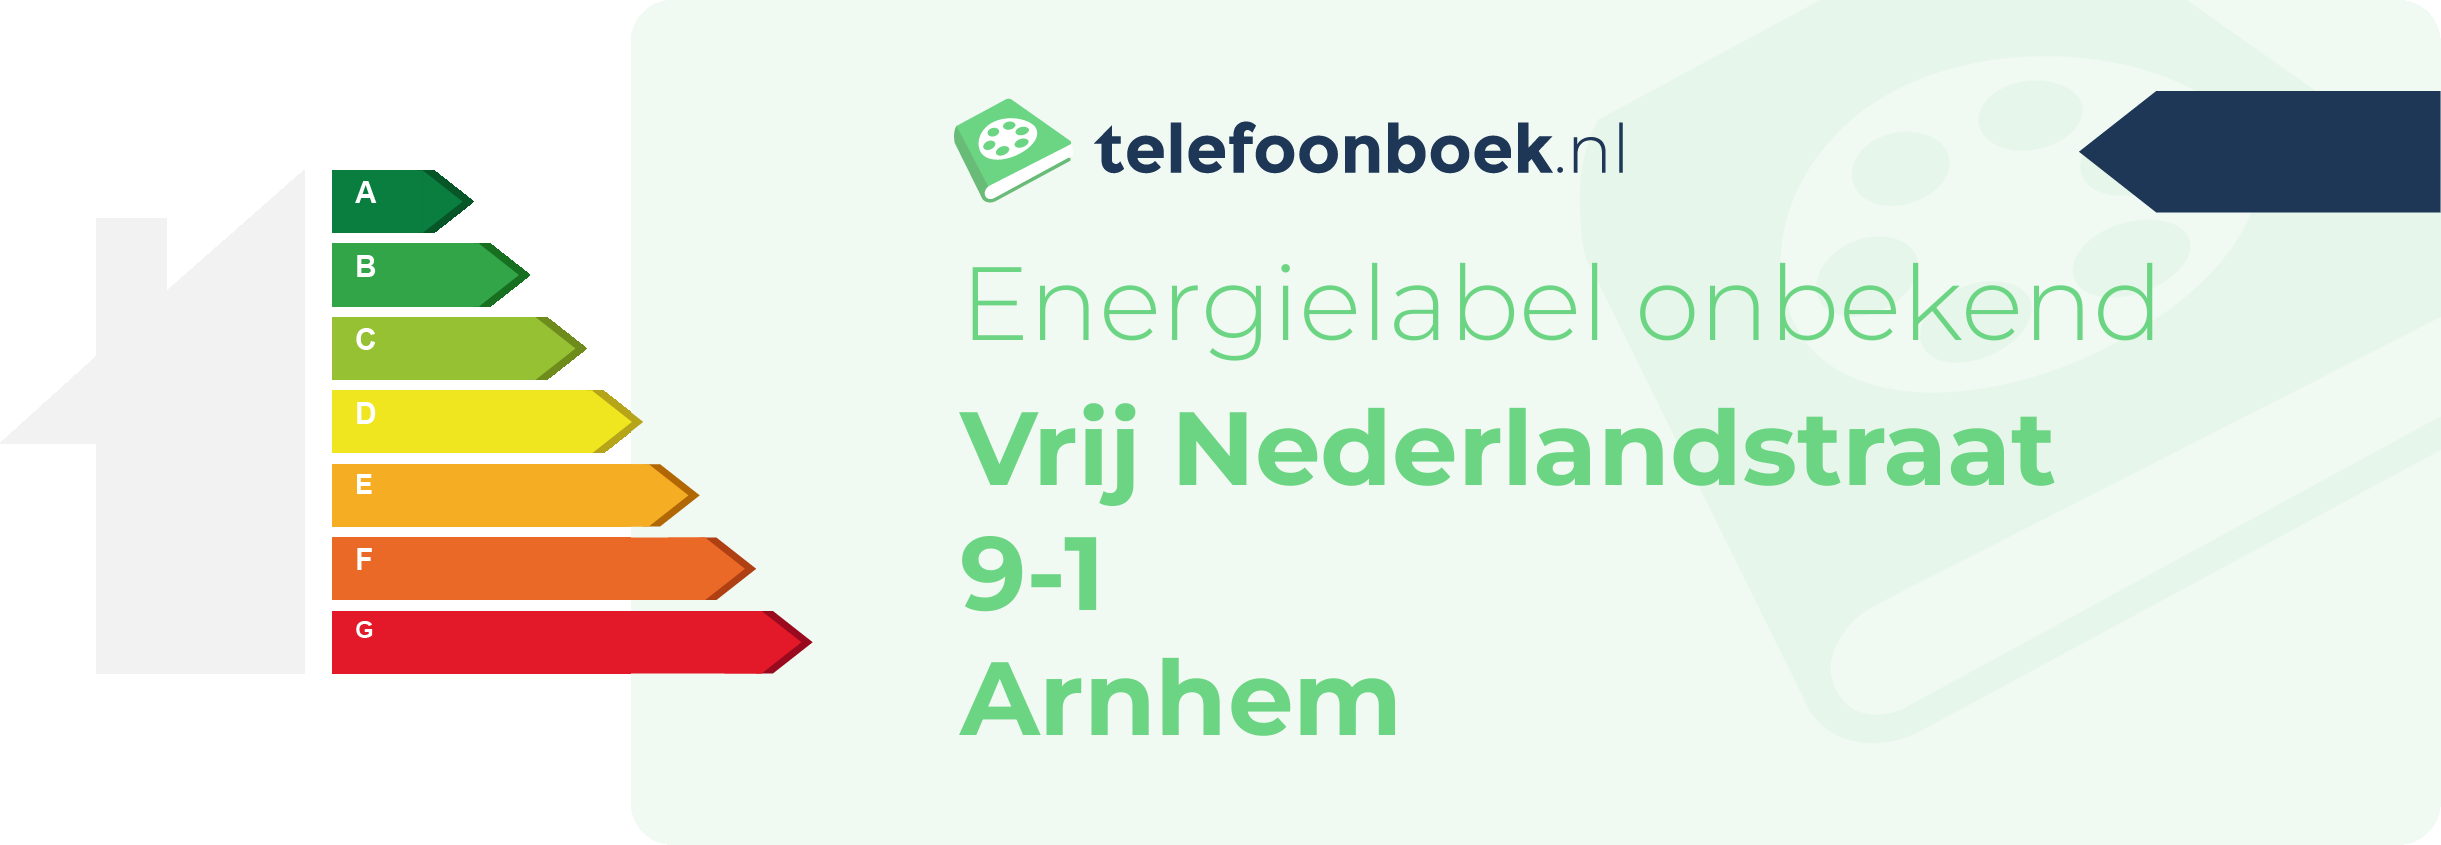 Energielabel Vrij Nederlandstraat 9-1 Arnhem